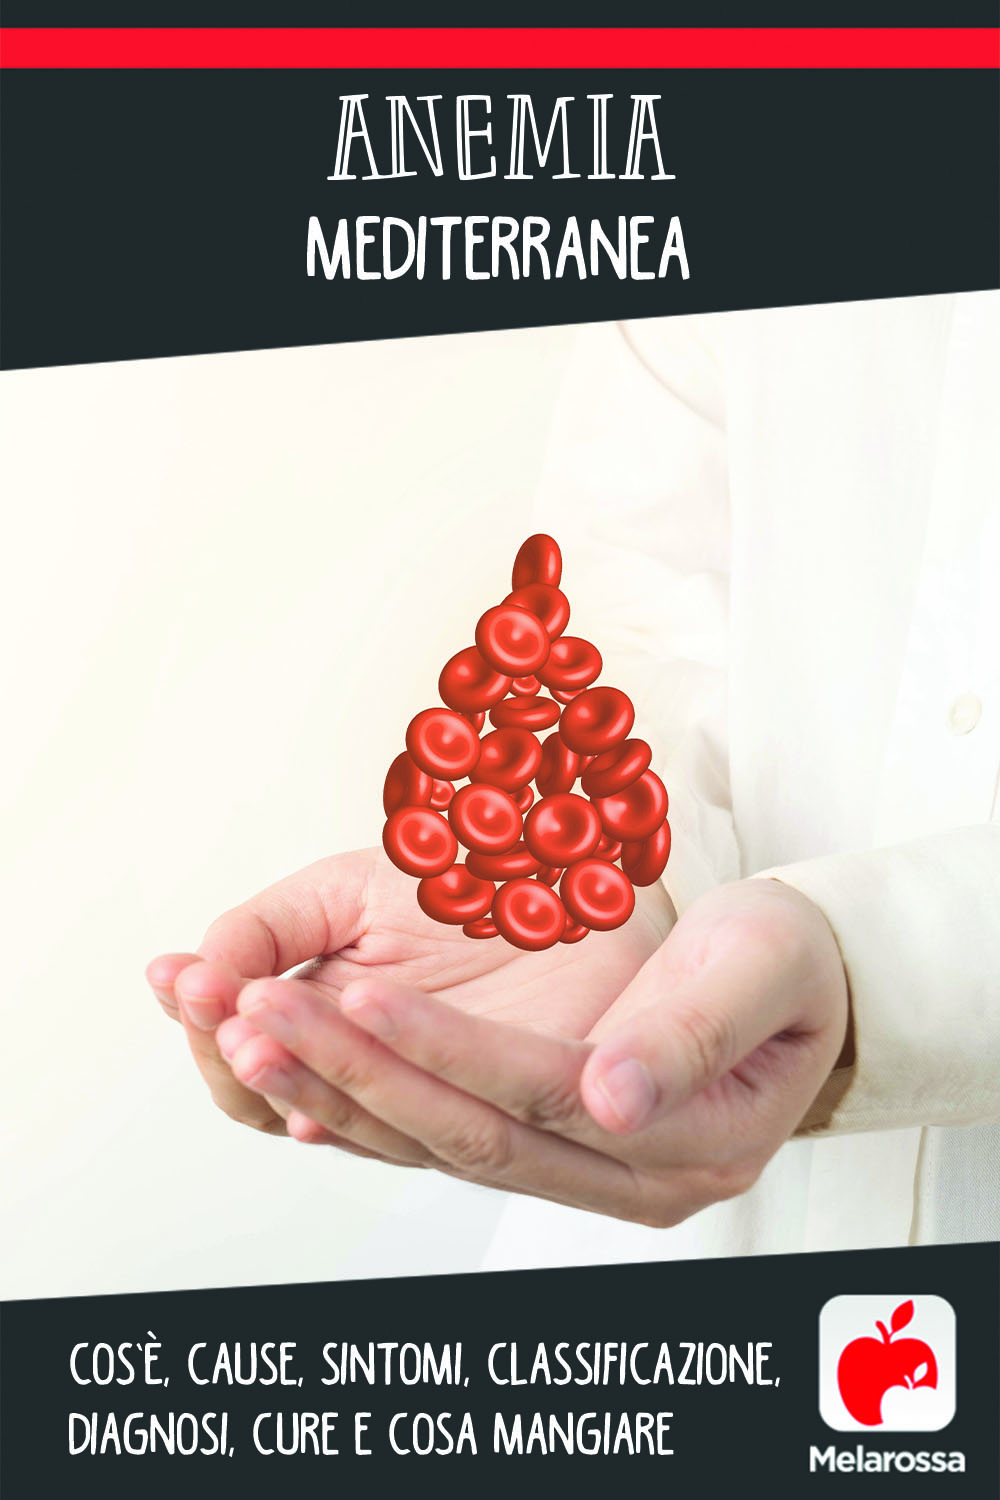 anemia mediterranea: cos'è, cause, sintomi e cure 